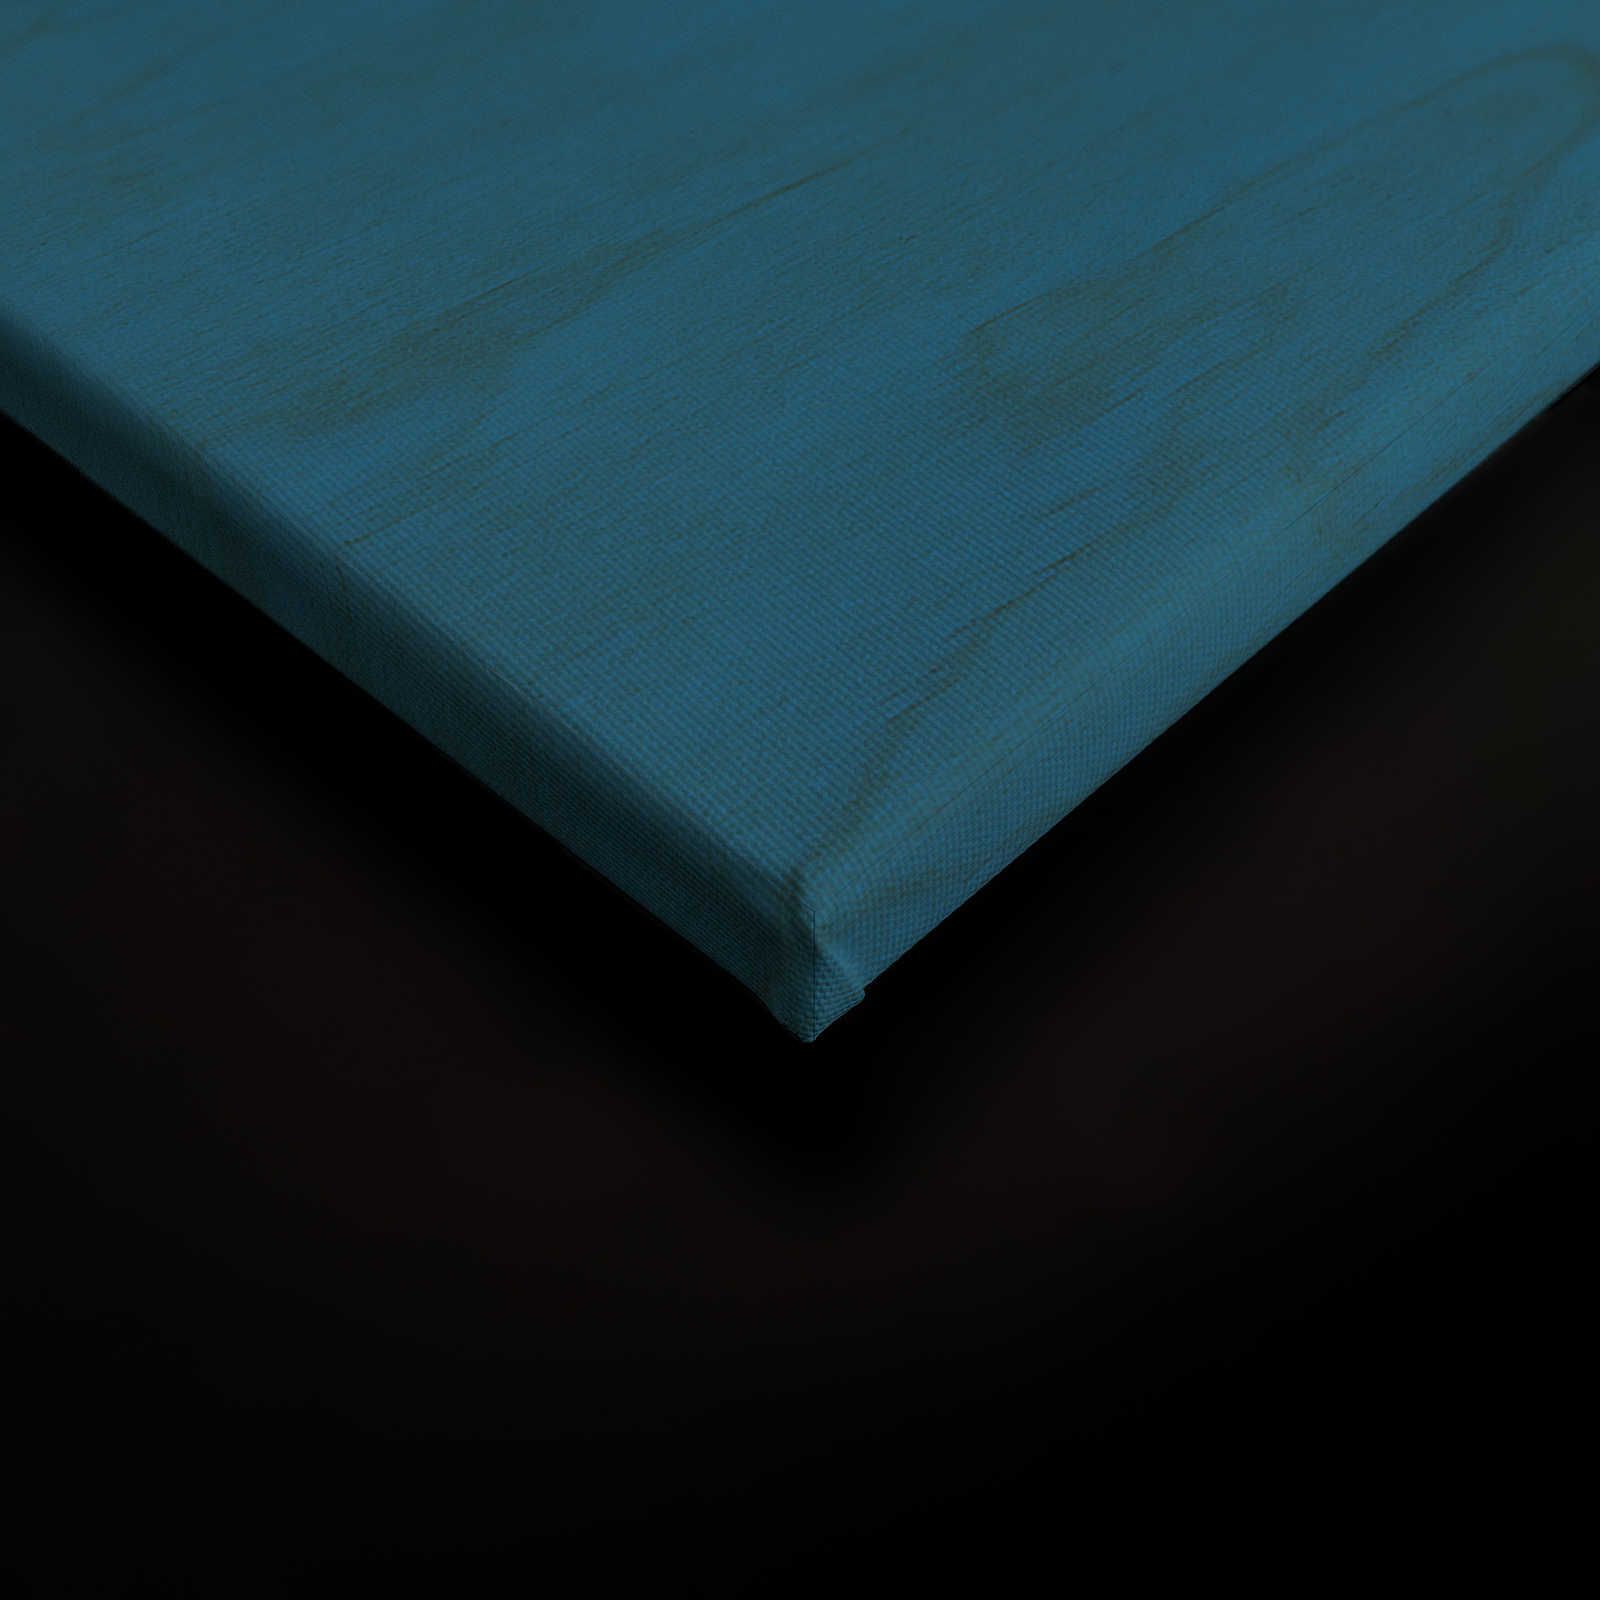             Oltremare 3 - Tela blu con disegno etnico e maschera - 1,20 m x 0,80 m
        